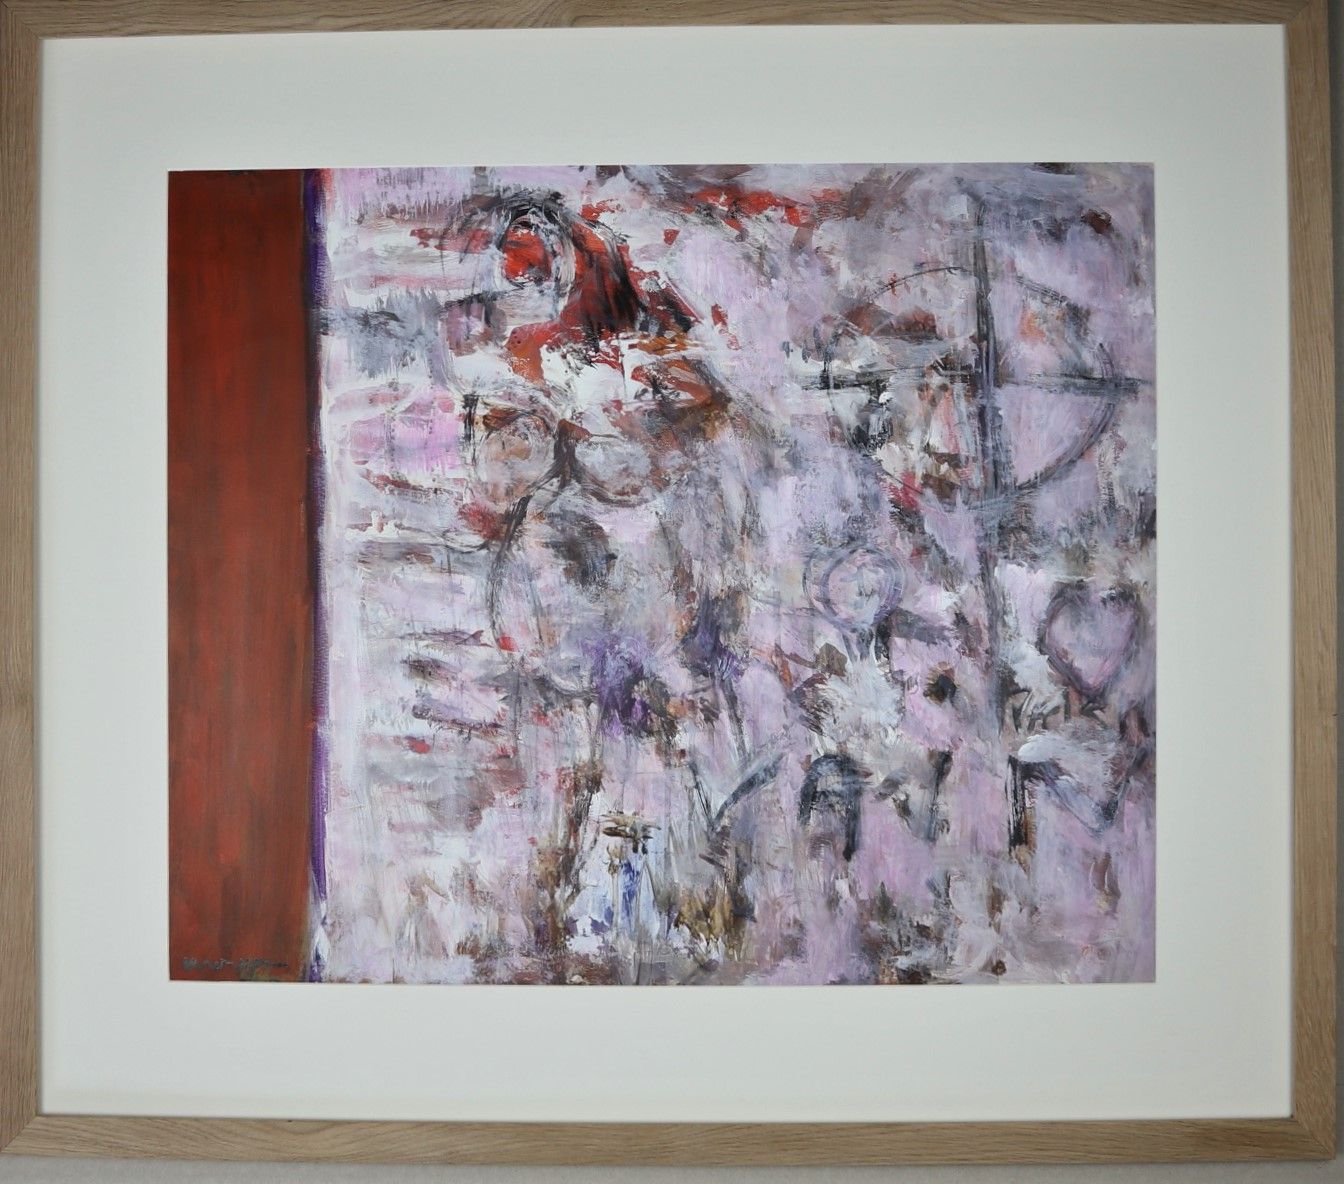 Null Jean-Jacques MORVAN (1928-2005): "十字架", 水粉, 丙烯酸在纸上, sbd, 在一个木框里. 60x72 cm.